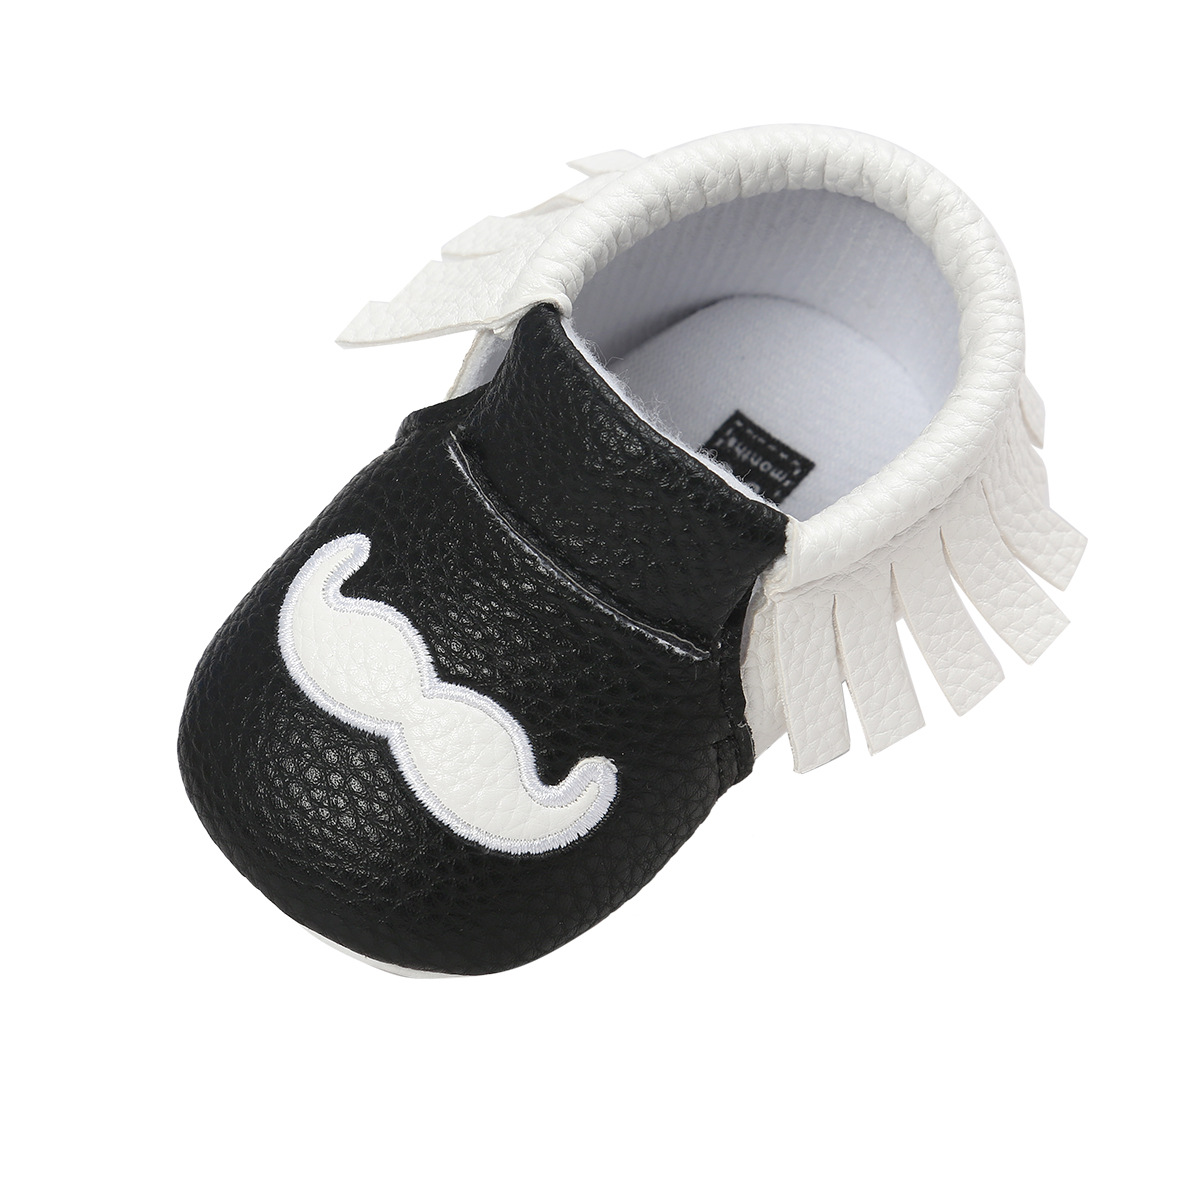 Chaussures bébé en PU artificiel - Ref 3436652 Image 73